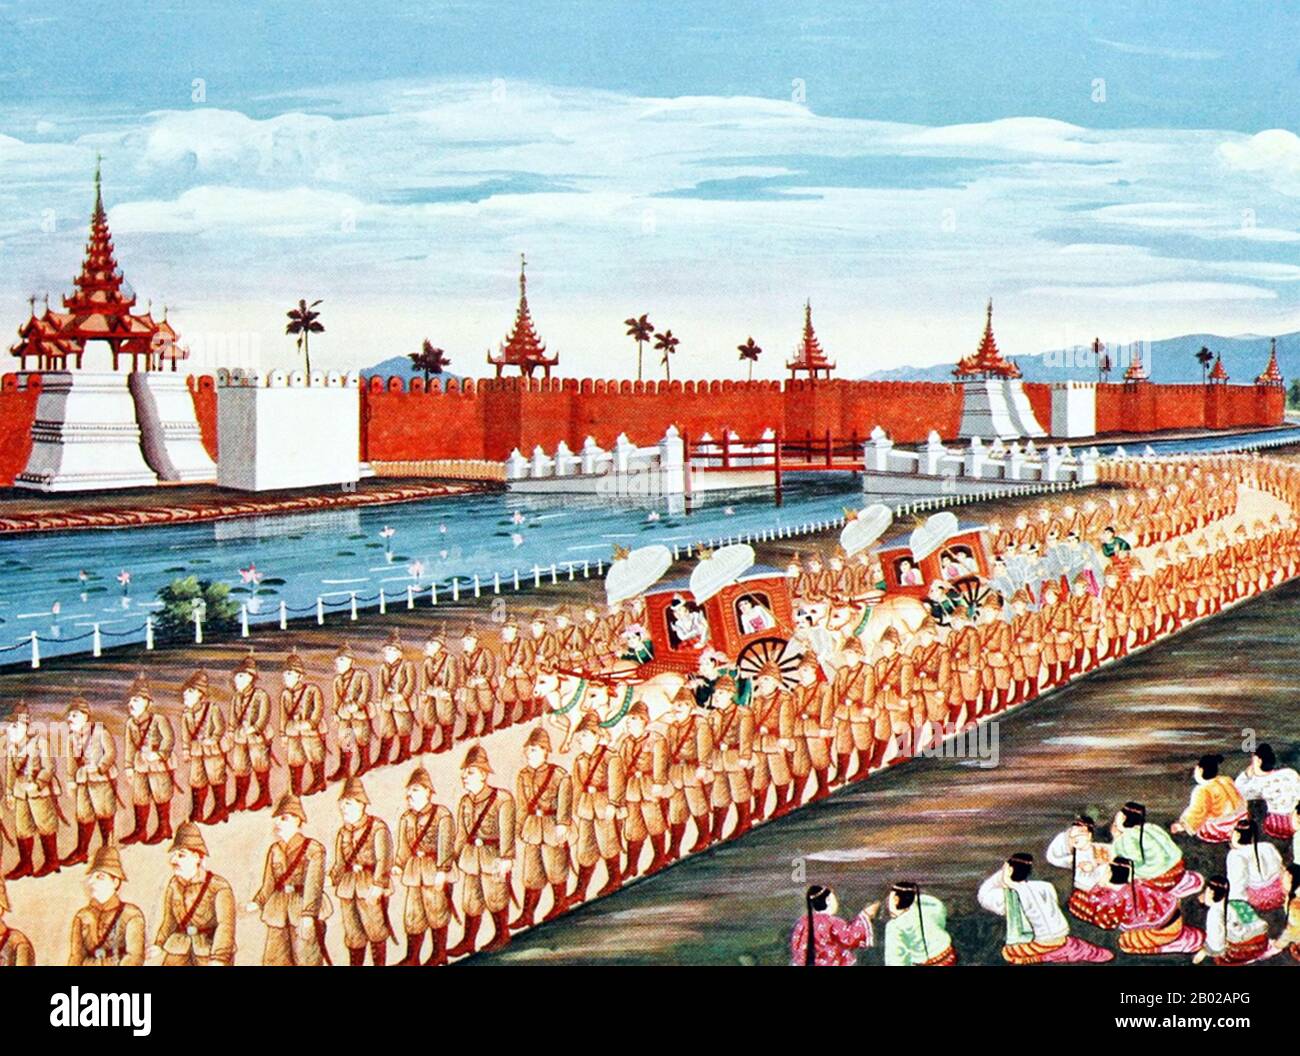 Thibaw Min (1. Januar 1859 - 19. Dezember 1916) war der letzte König der Konbaung-Dynastie von Birma (Myanmar) und auch der letzte in der birmanischen Geschichte. Seine Regierungszeit endete, als Birma am 29. November 1885 vor seiner offiziellen Annektierung am 1. Januar des Jahres 1886 von den Truppen des britischen Empires im Dritten Anglo-Birmanischen Krieg besiegt wurde. Nach der Thronbesteigung wurden Thibaw, seine Frau Supayalat und zwei Säuglingstöchter nach Ratnagiri, Indien, einer Hafenstadt vor dem Arabischen Meer, verbannt. Supayalat (13. Dezember 1859 - 24. November 1925) war die letzte Königin von Birma, die in Mandalay (1878-1885), geboren in Kin, herrschte Stockfoto